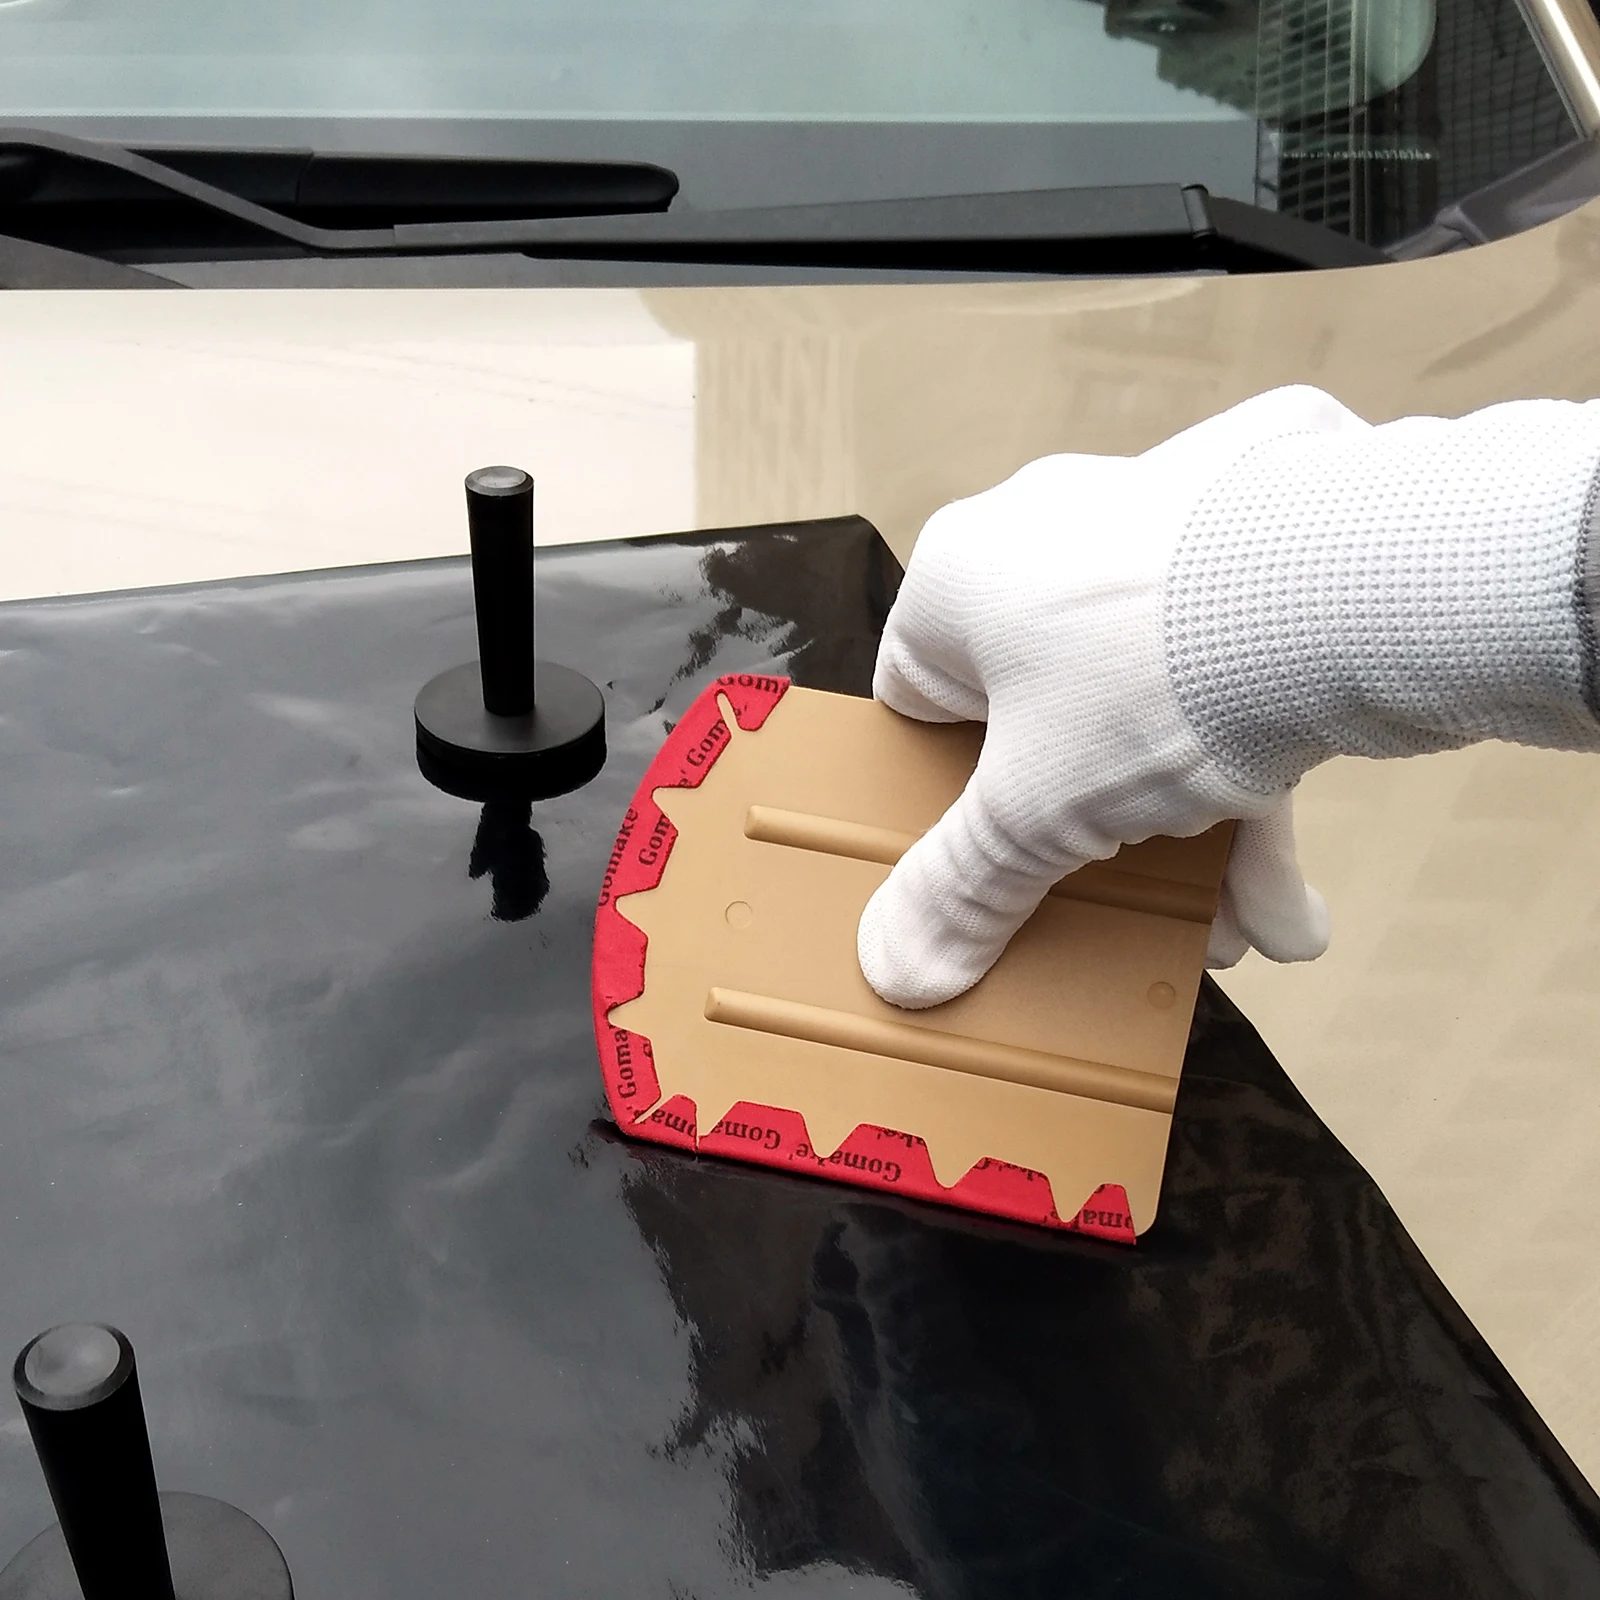 EHDIS углеродное волокно обёрточная бумага пинг магнит Ракель скребок набор виниловая пленка наклейка на автомобиль резак нож комплект окна тонировка Инструменты